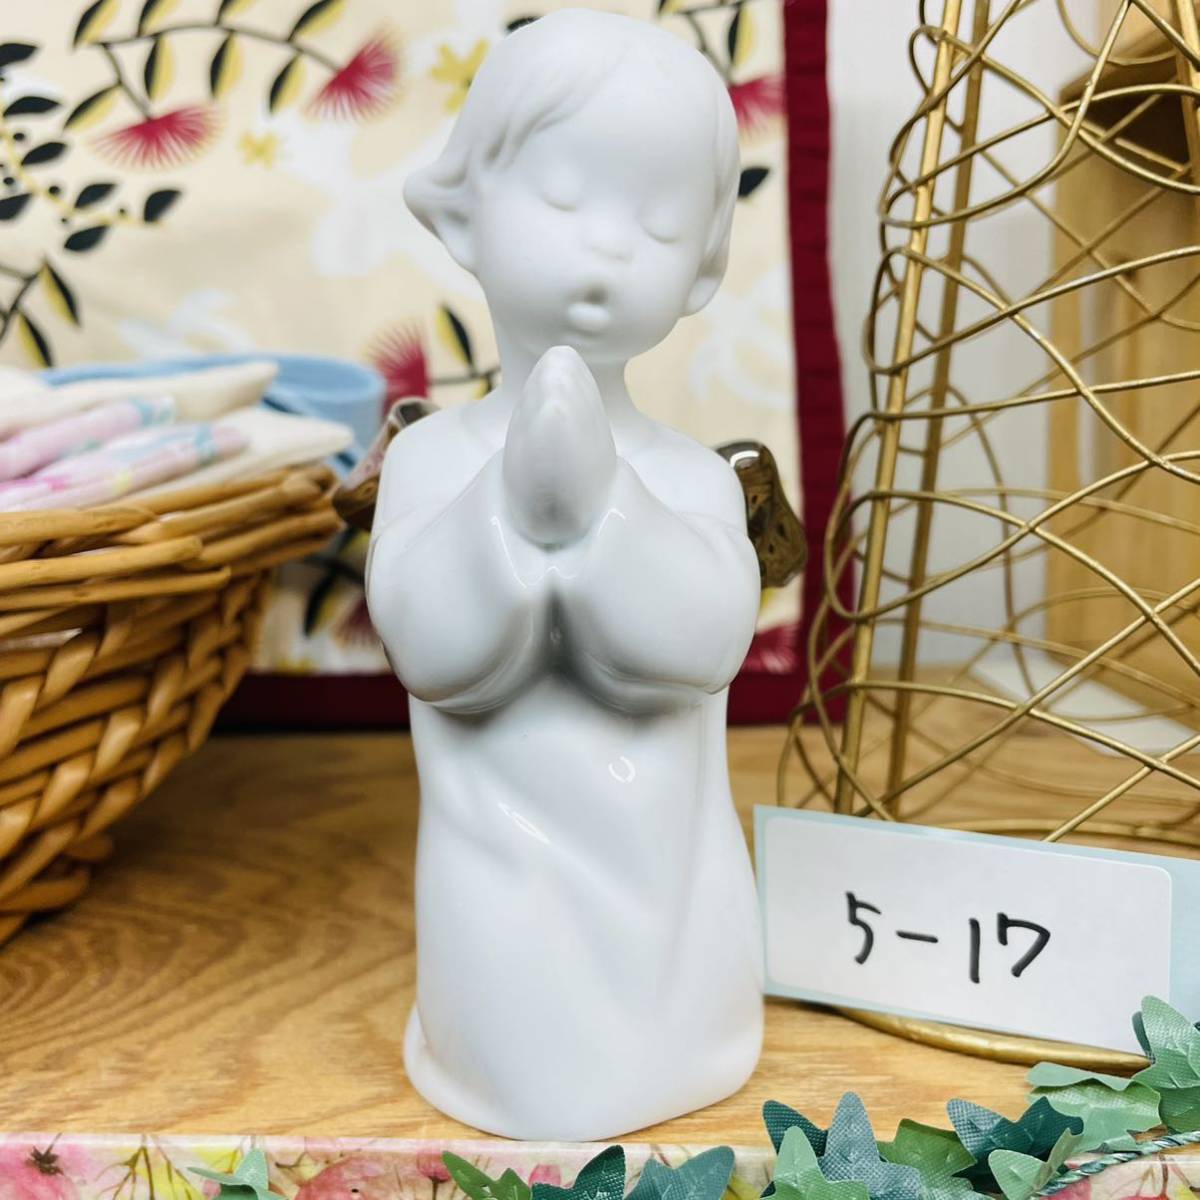 5-17 リヤドロ 陶器人形 LLADRO 天使 かわいいお祈り 買ったまま飾らないので _画像1